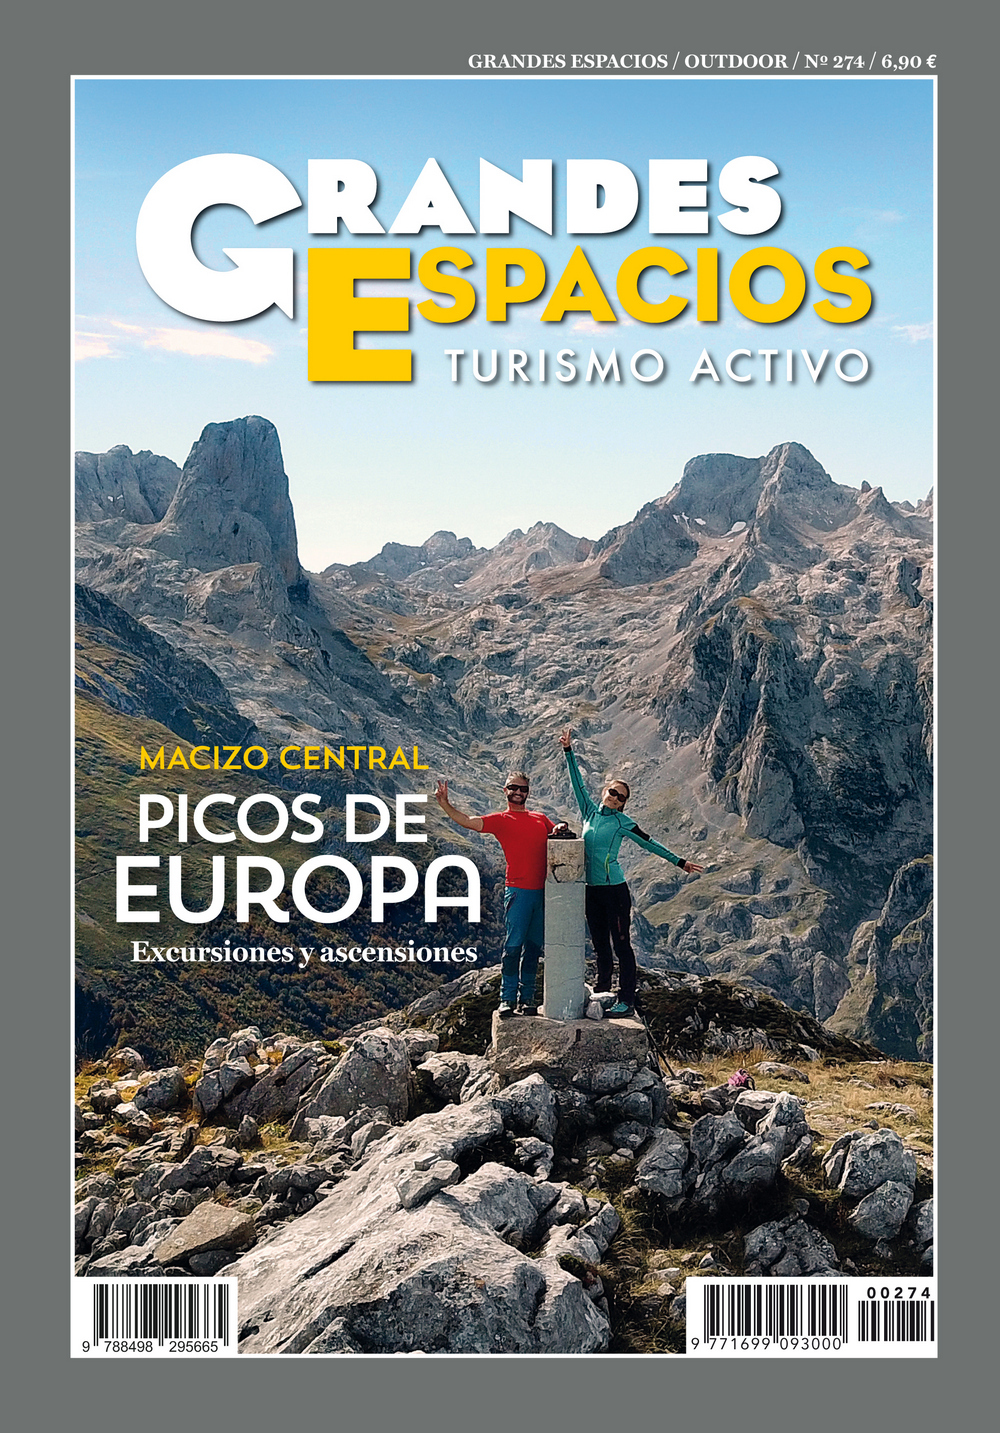 Macizo Central de los Picos de Europa. Excursiones y ascensiones